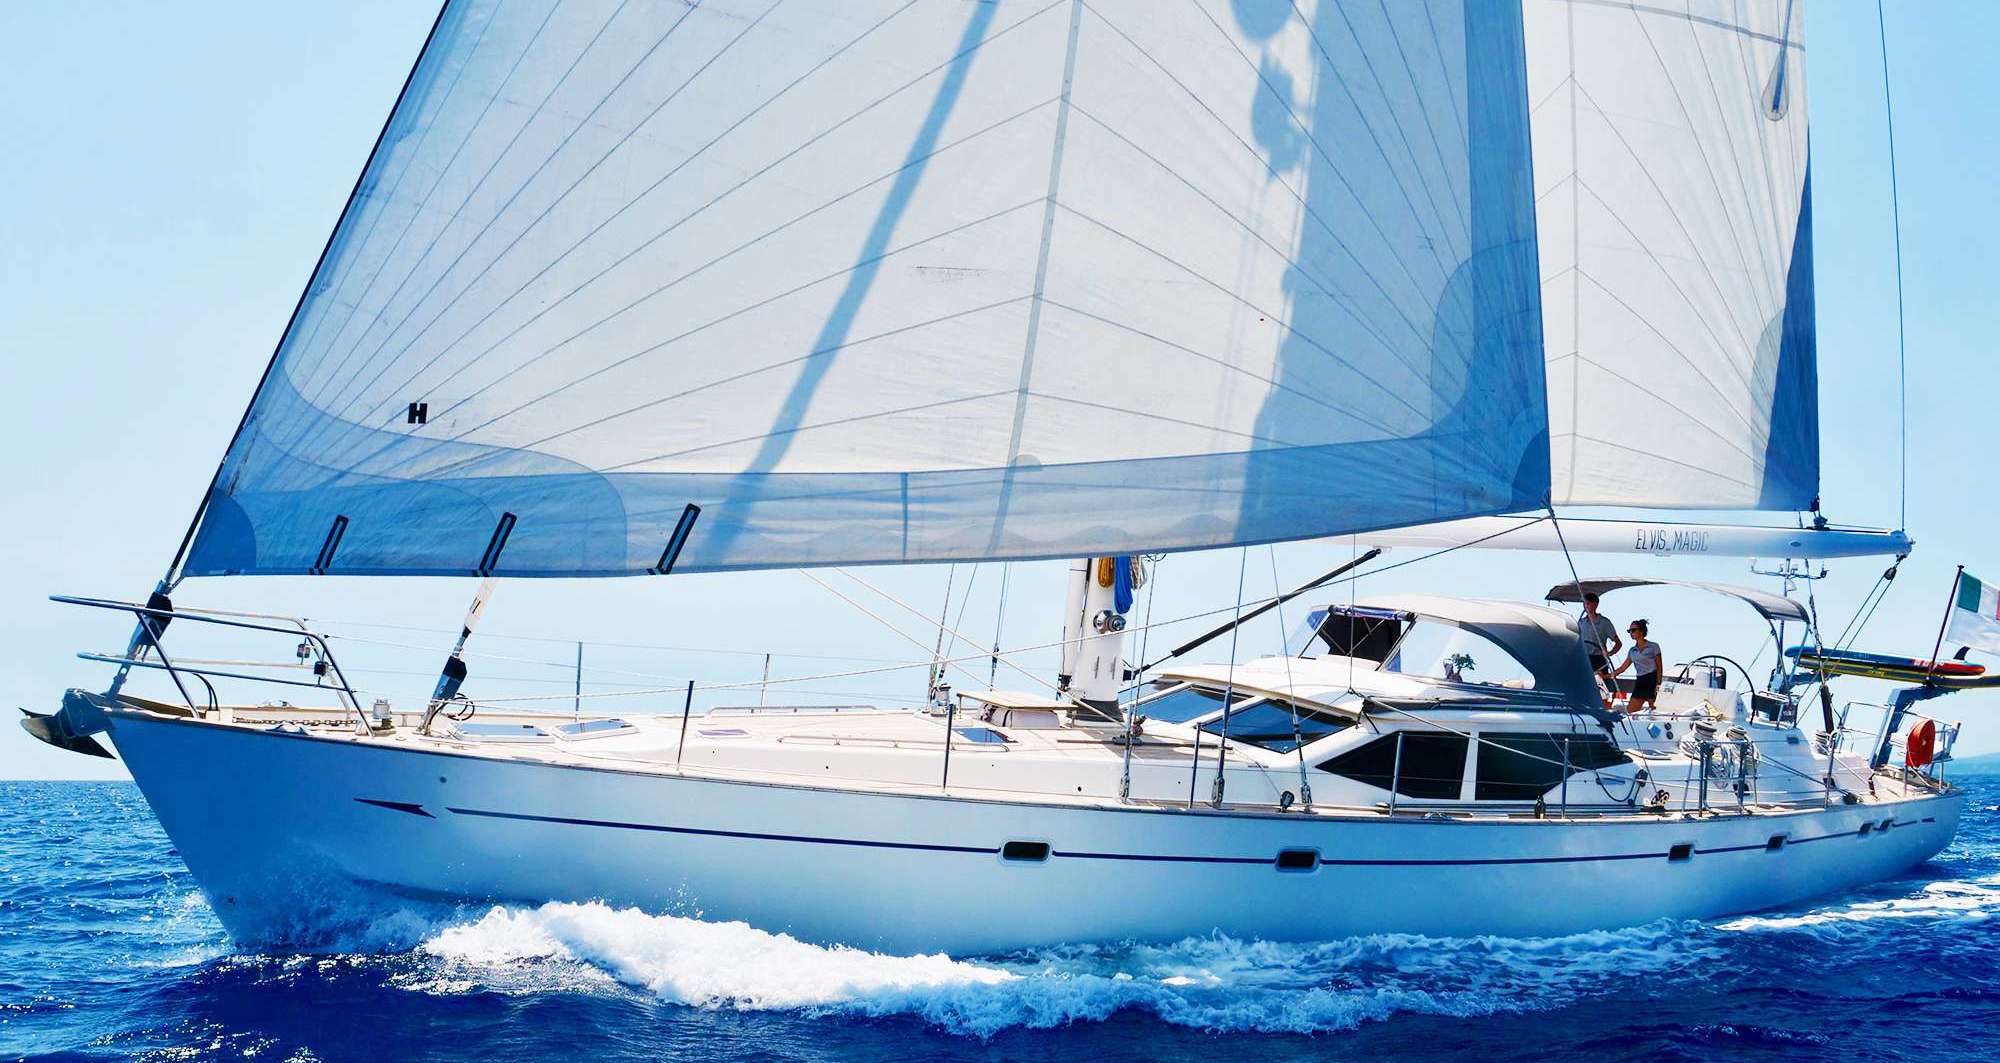 ELVIS MAGIC - Yacht Charter Nanny Cay & Boat hire in W. Med -Riviera/Cors/Sard., Bahamas, Caribbean Leewards, Caribbean Windwards 1